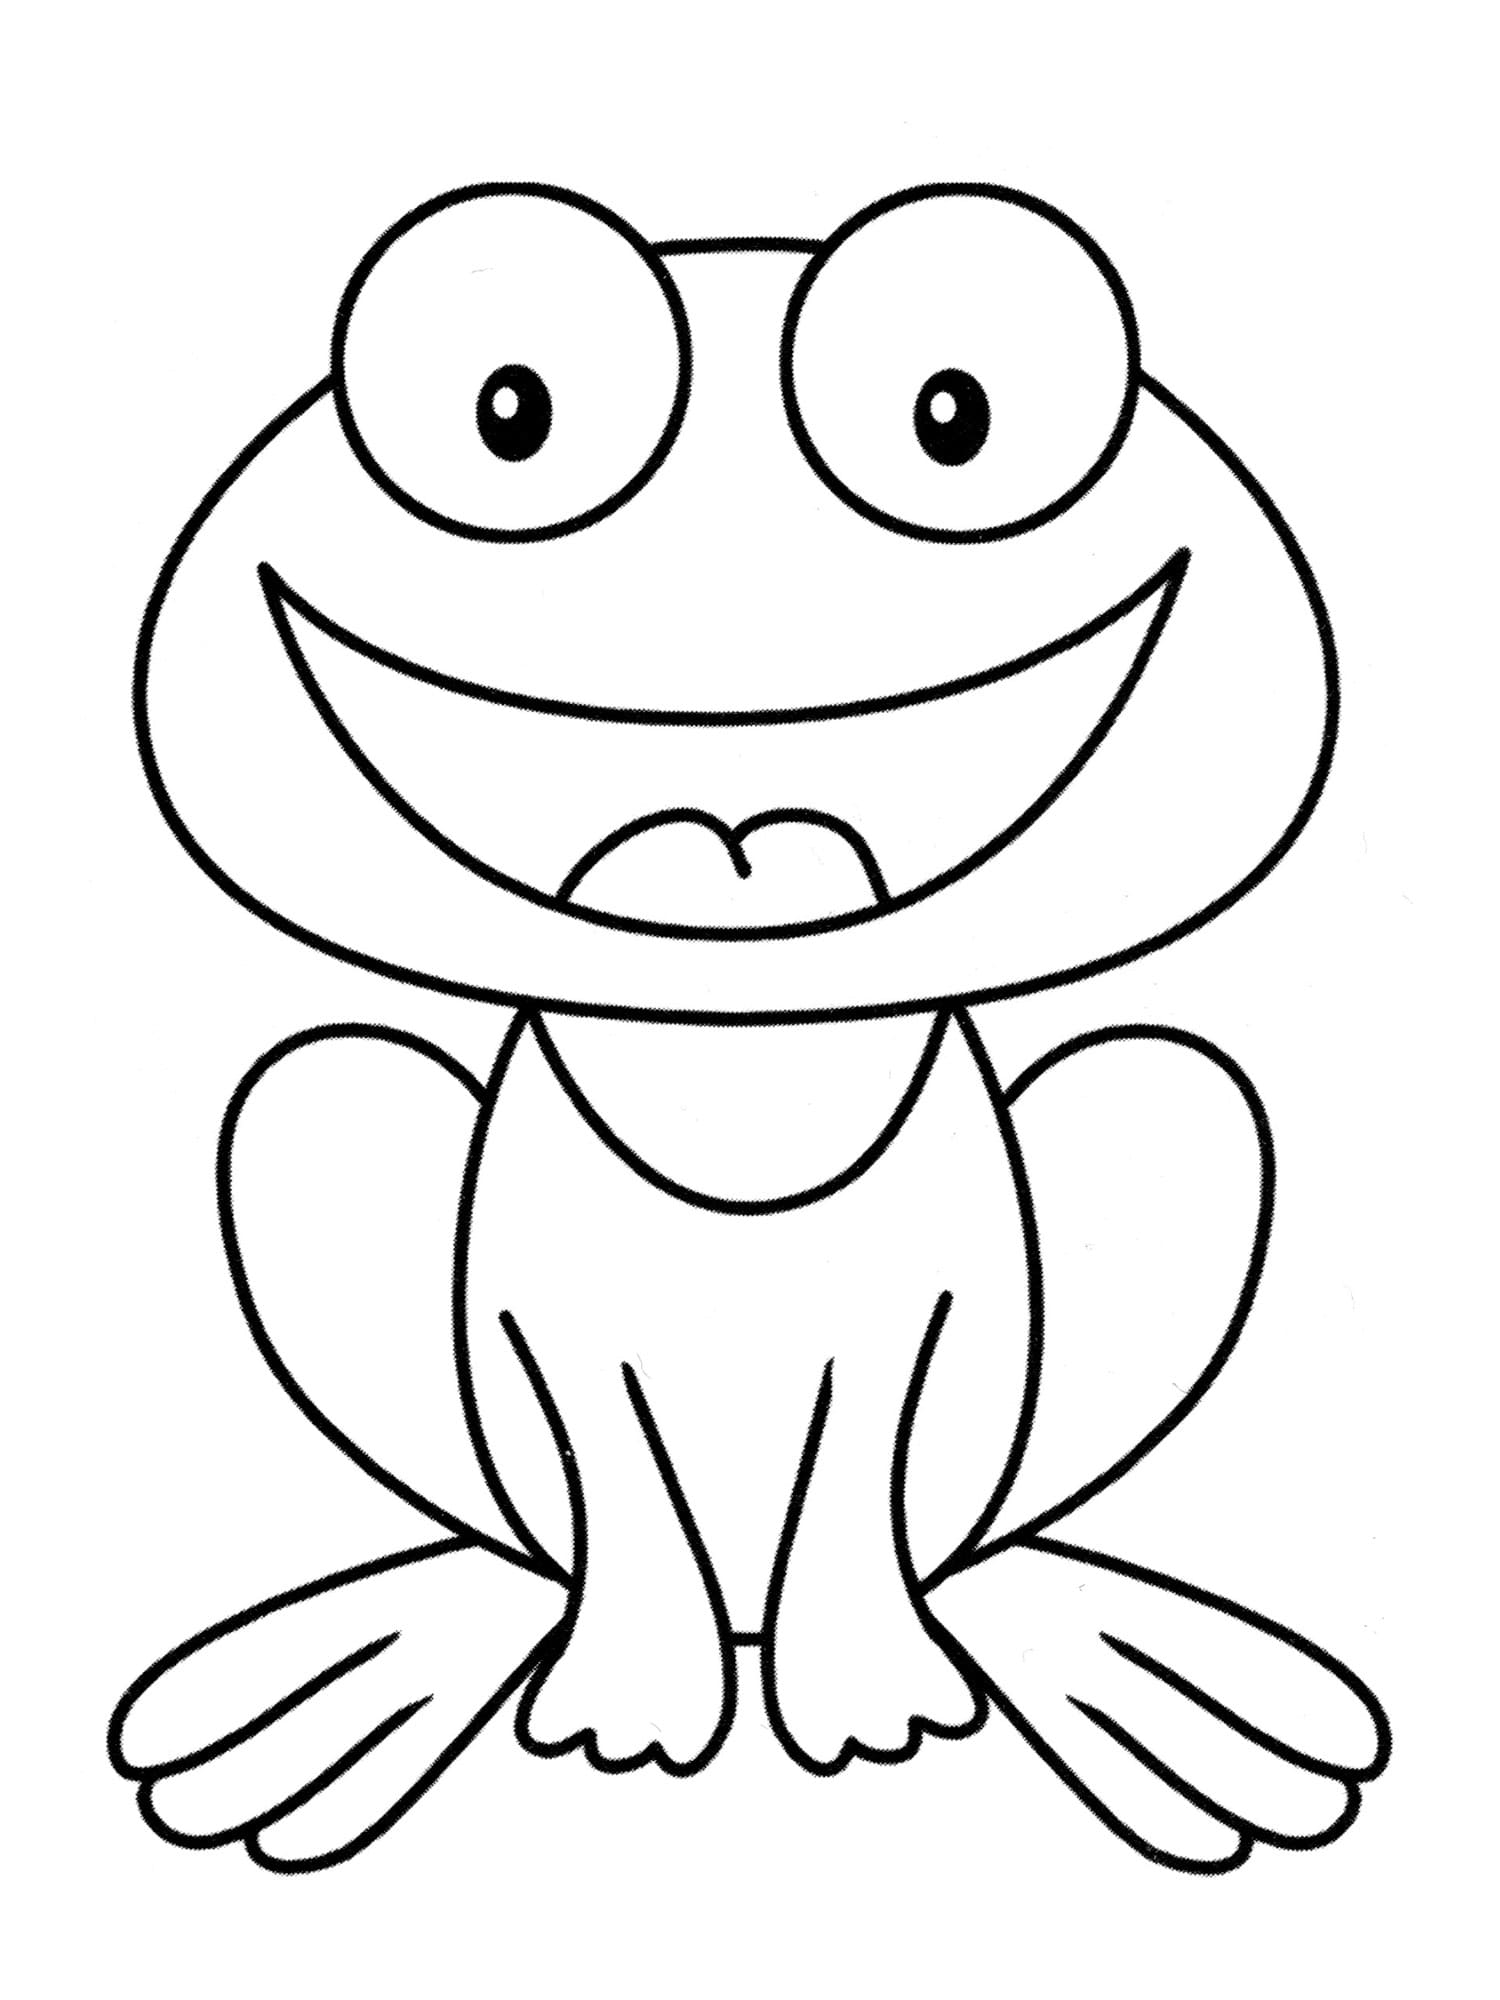 웃는 개구리 coloring page